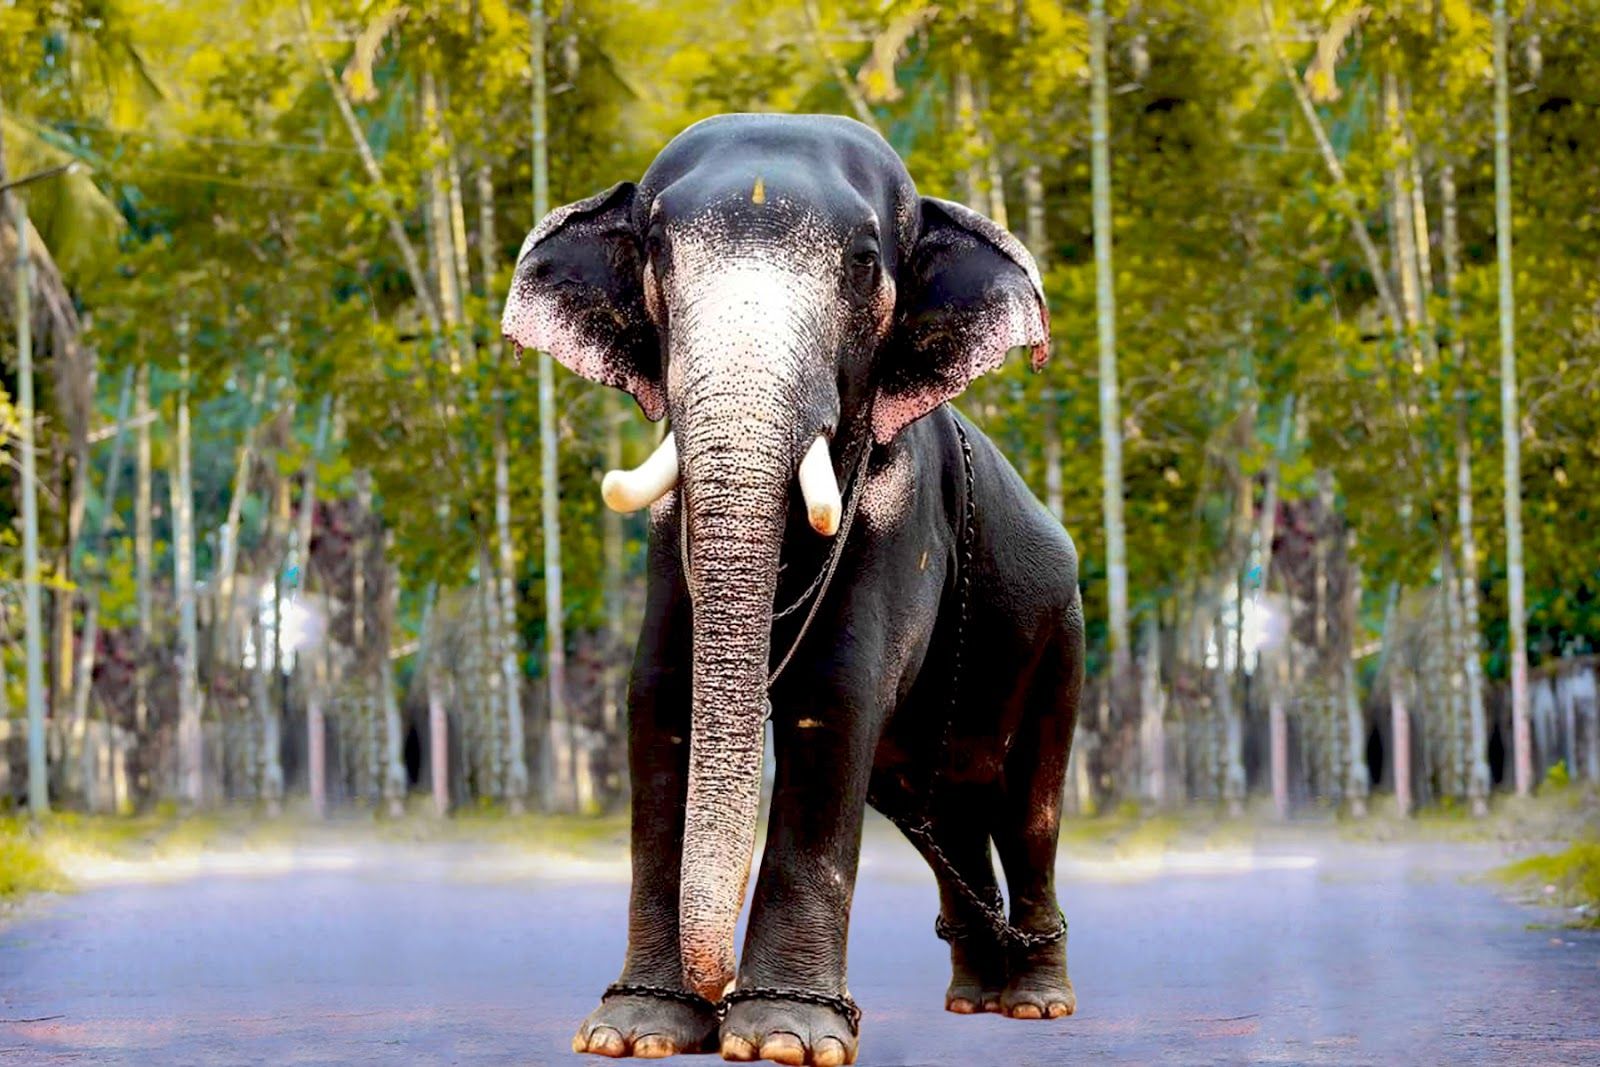 Kerala Elephants Image. Kerala elephants wallpaper HD. Kerala